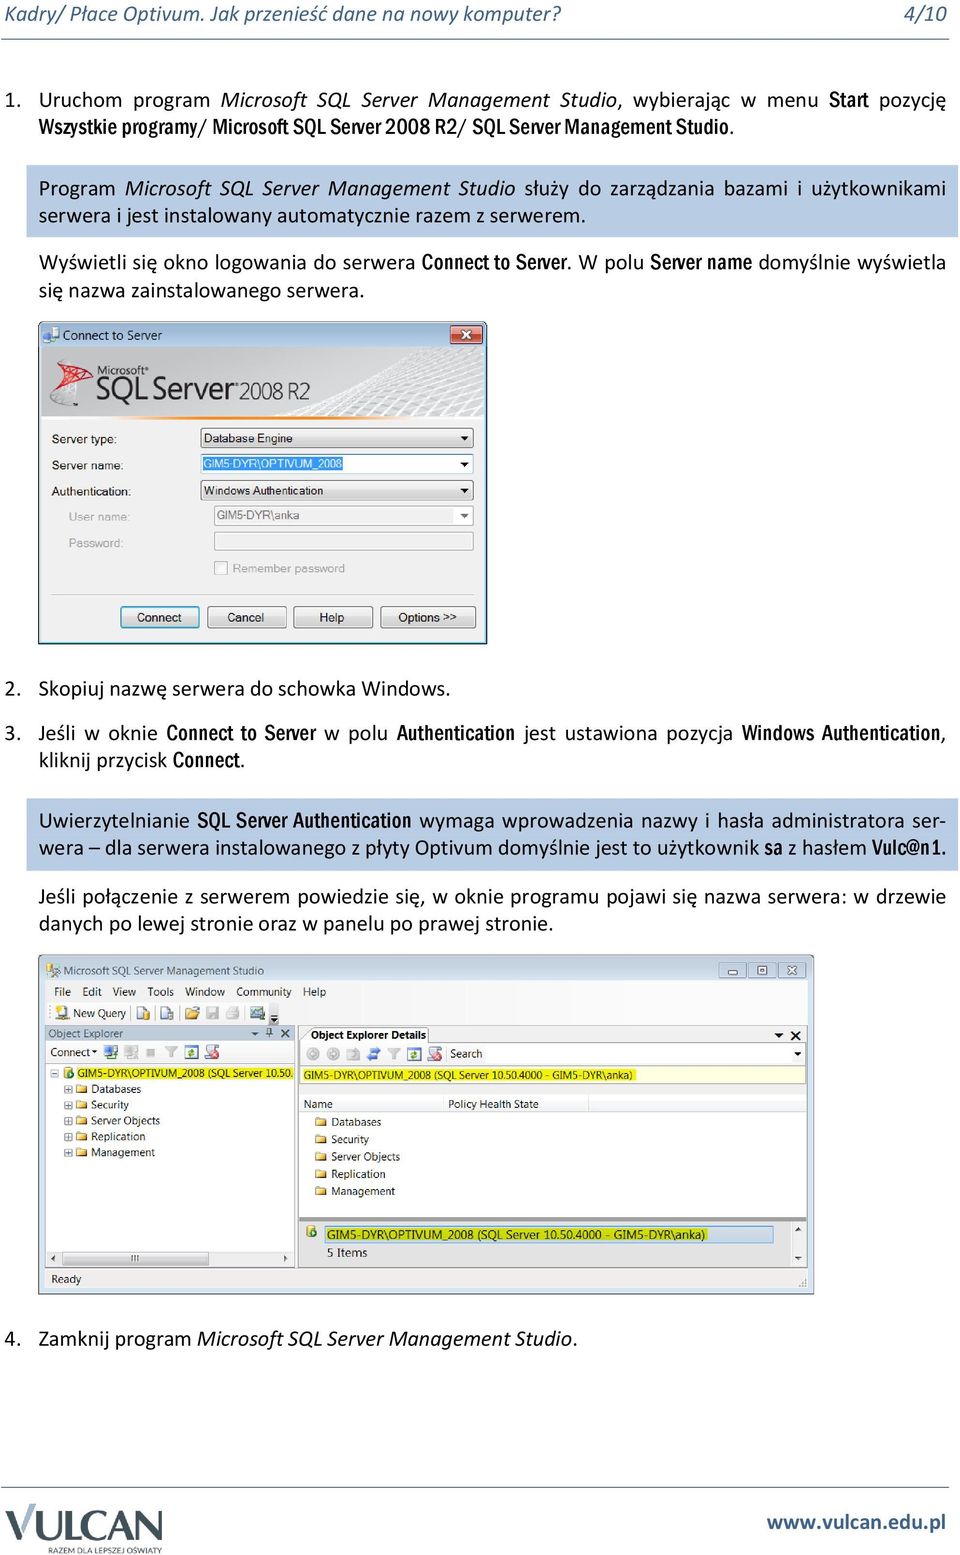 Program Microsoft SQL Server Management Studio służy do zarządzania bazami i użytkownikami serwera i jest instalowany automatycznie razem z serwerem.